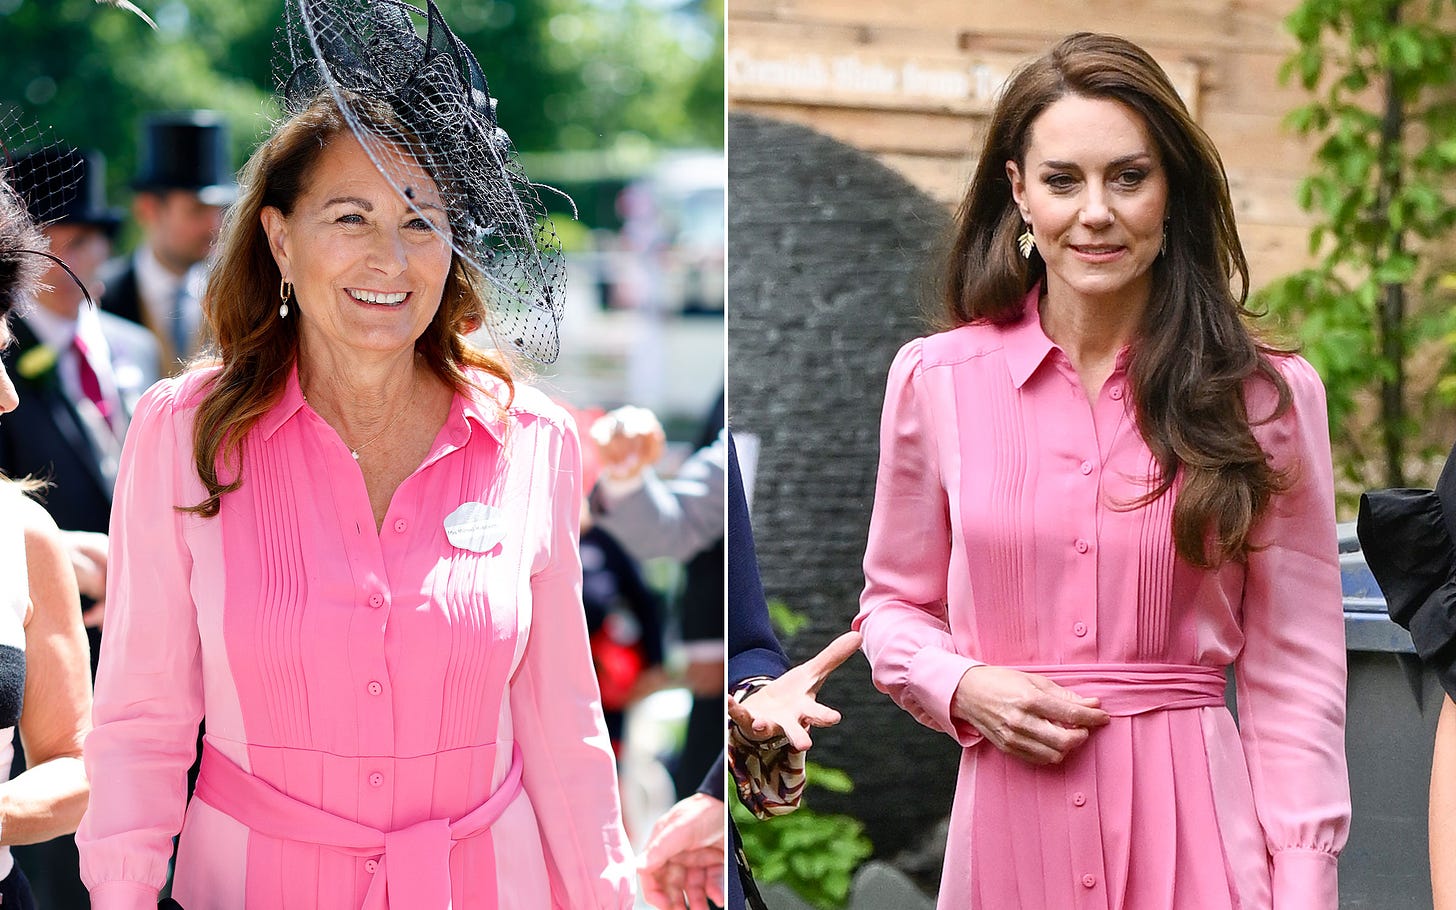 Carole Middleton and Kate Middleton wearing same pink dress